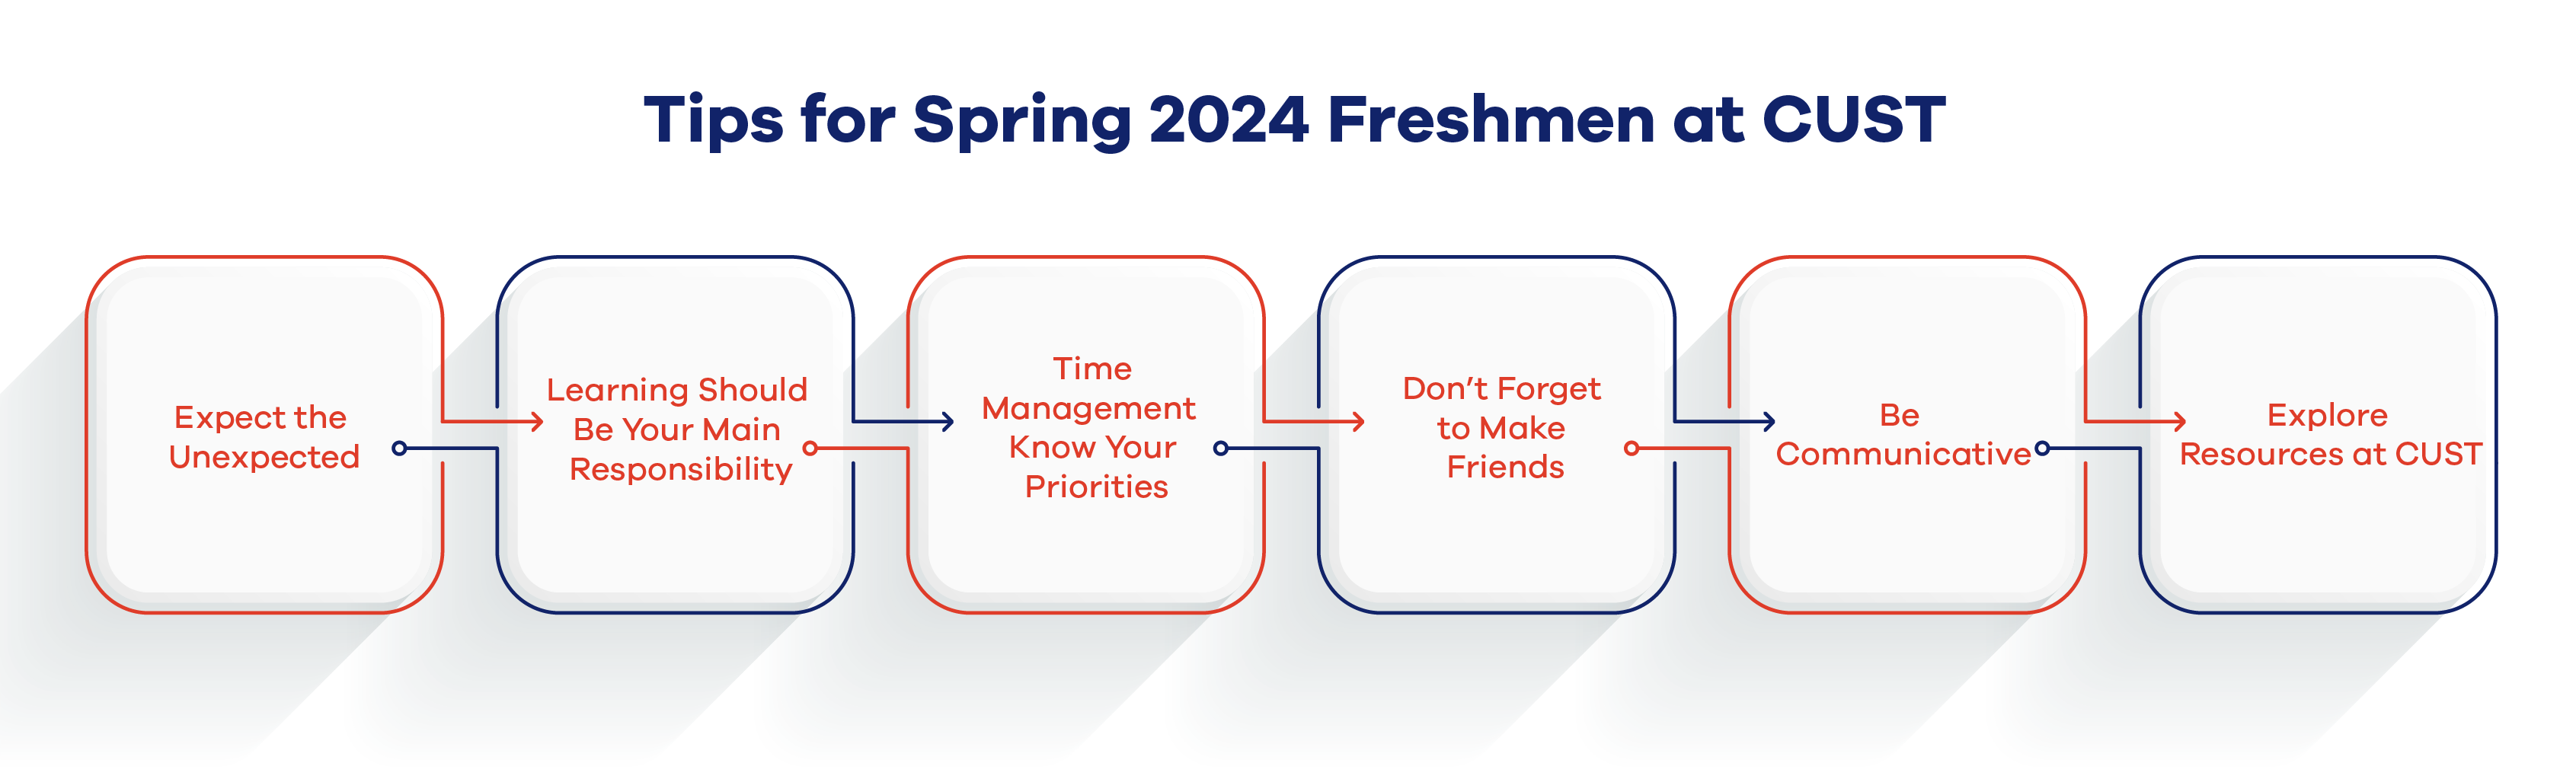 Tips for Spring 2024 Freshmen